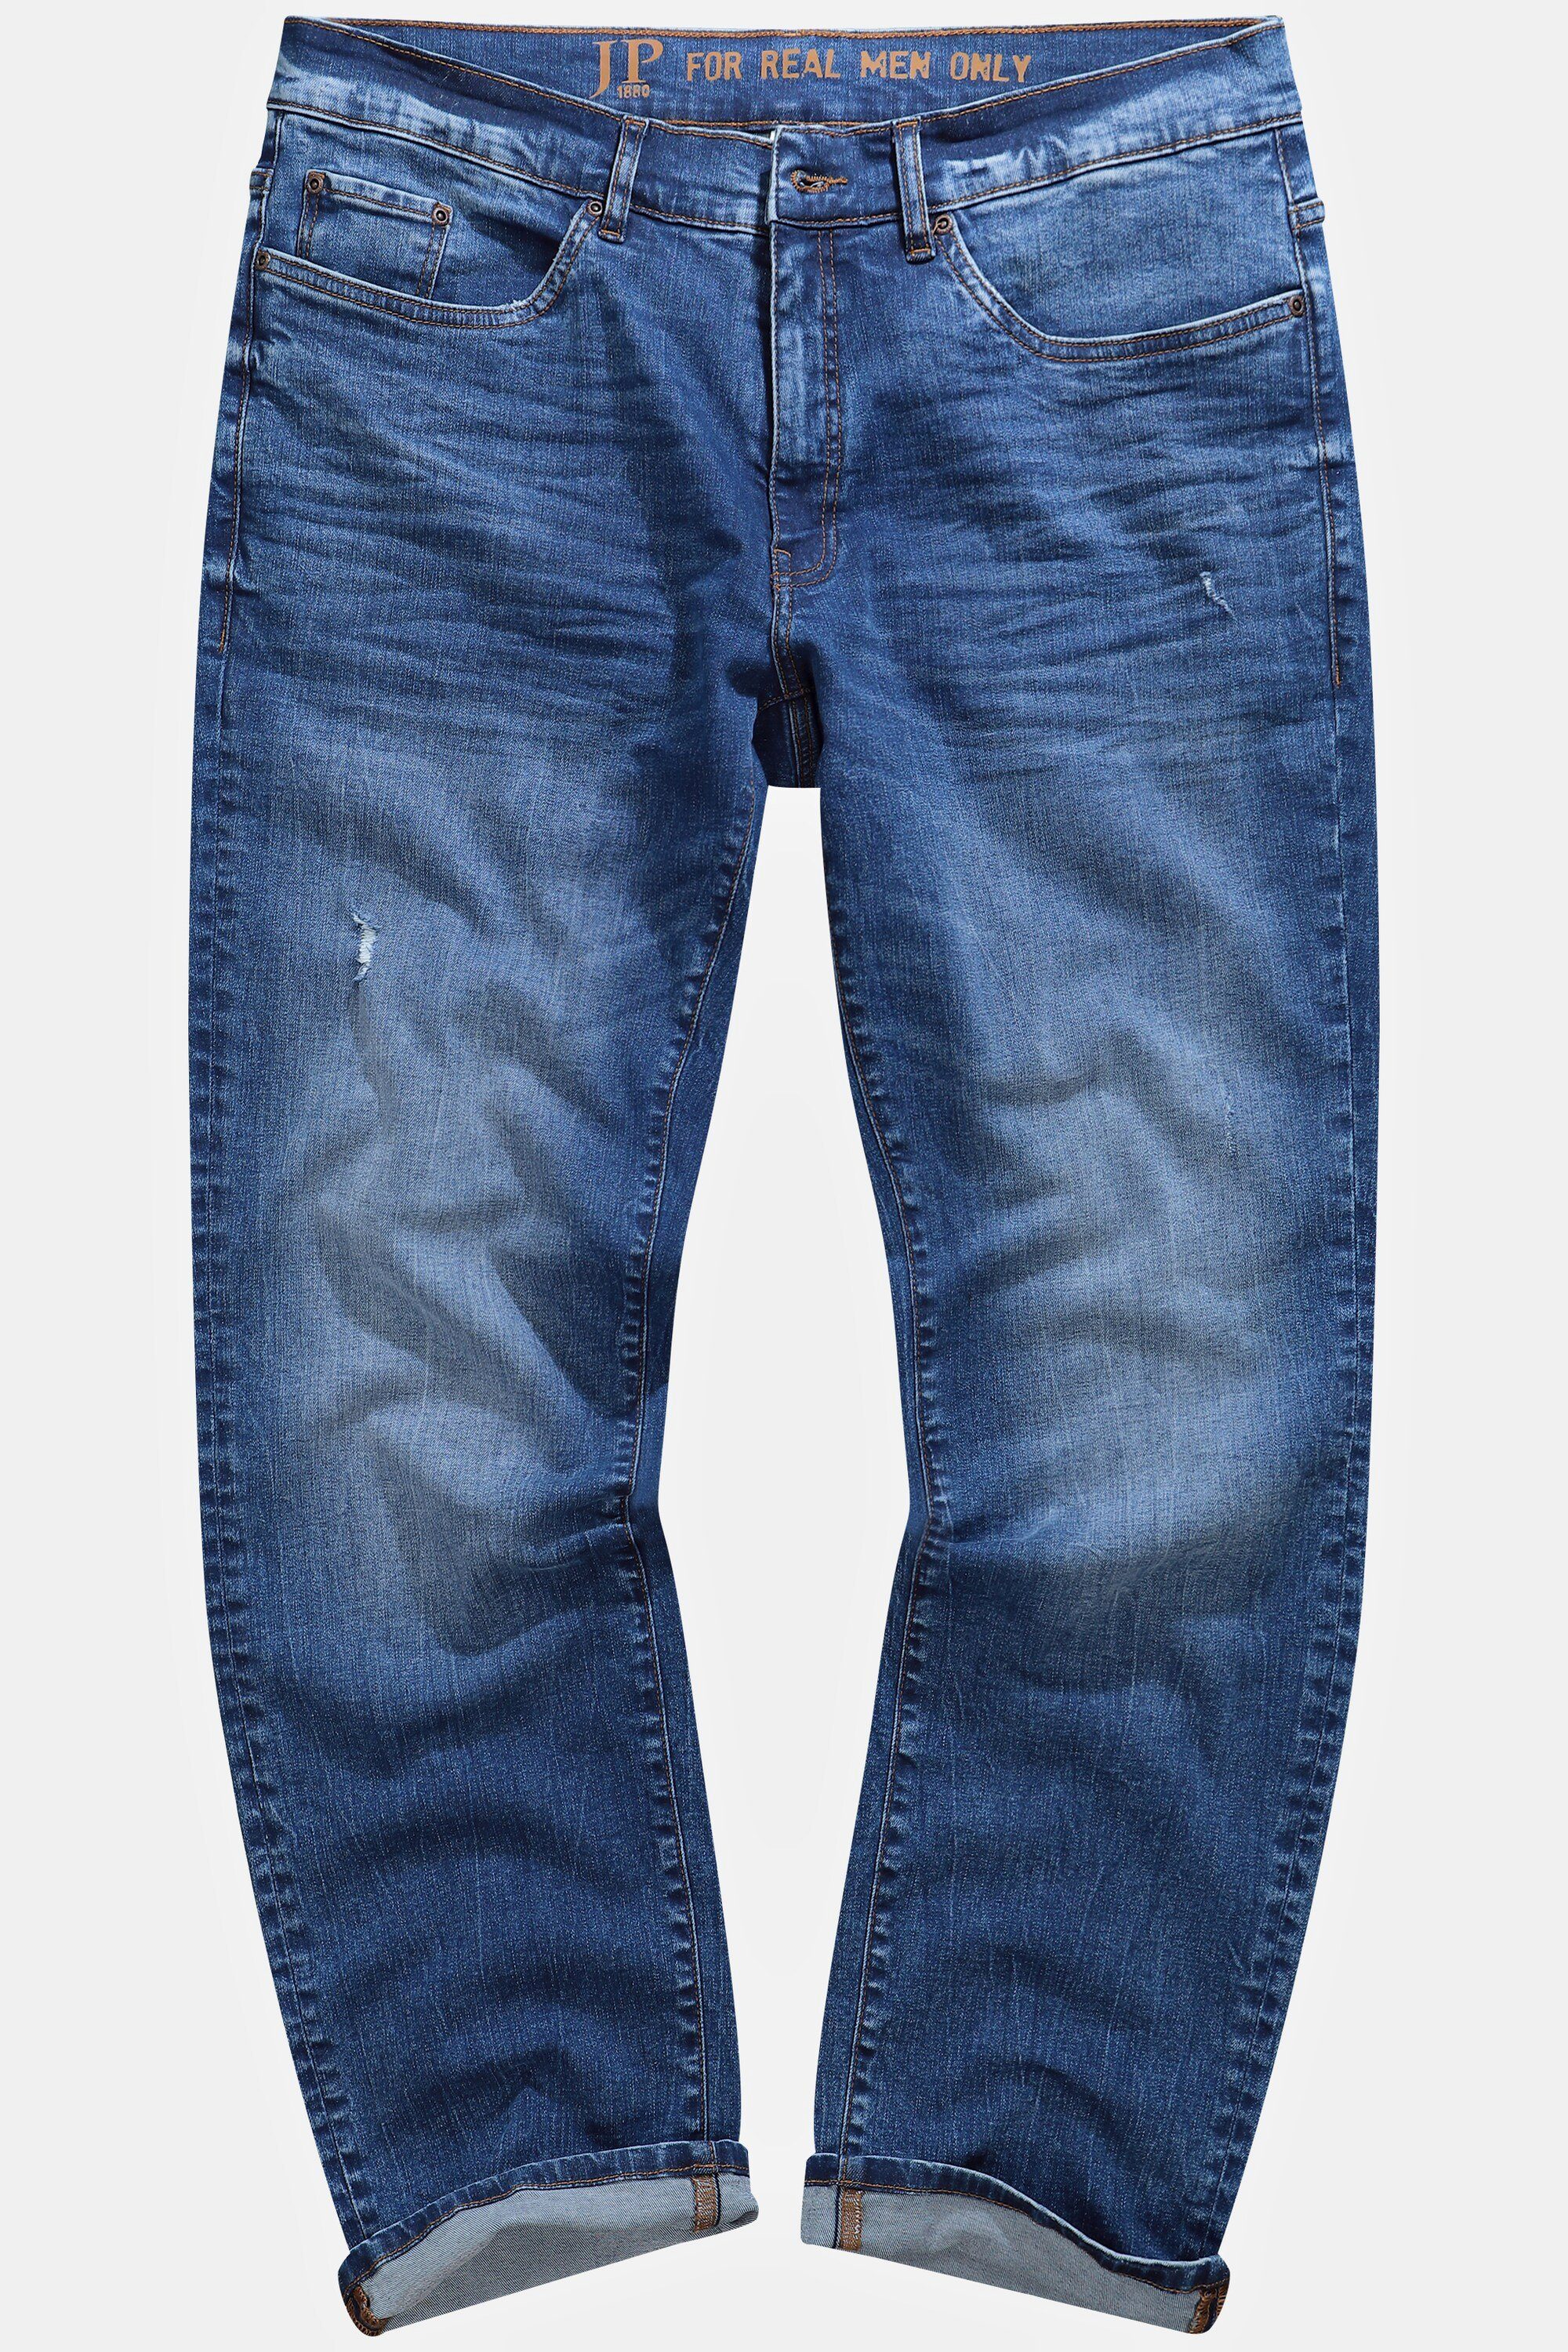 denim Jeans 5-Pocket-Jeans blue FLEXNAMIC® Fit Regular Denim JP1880 Vintage Look